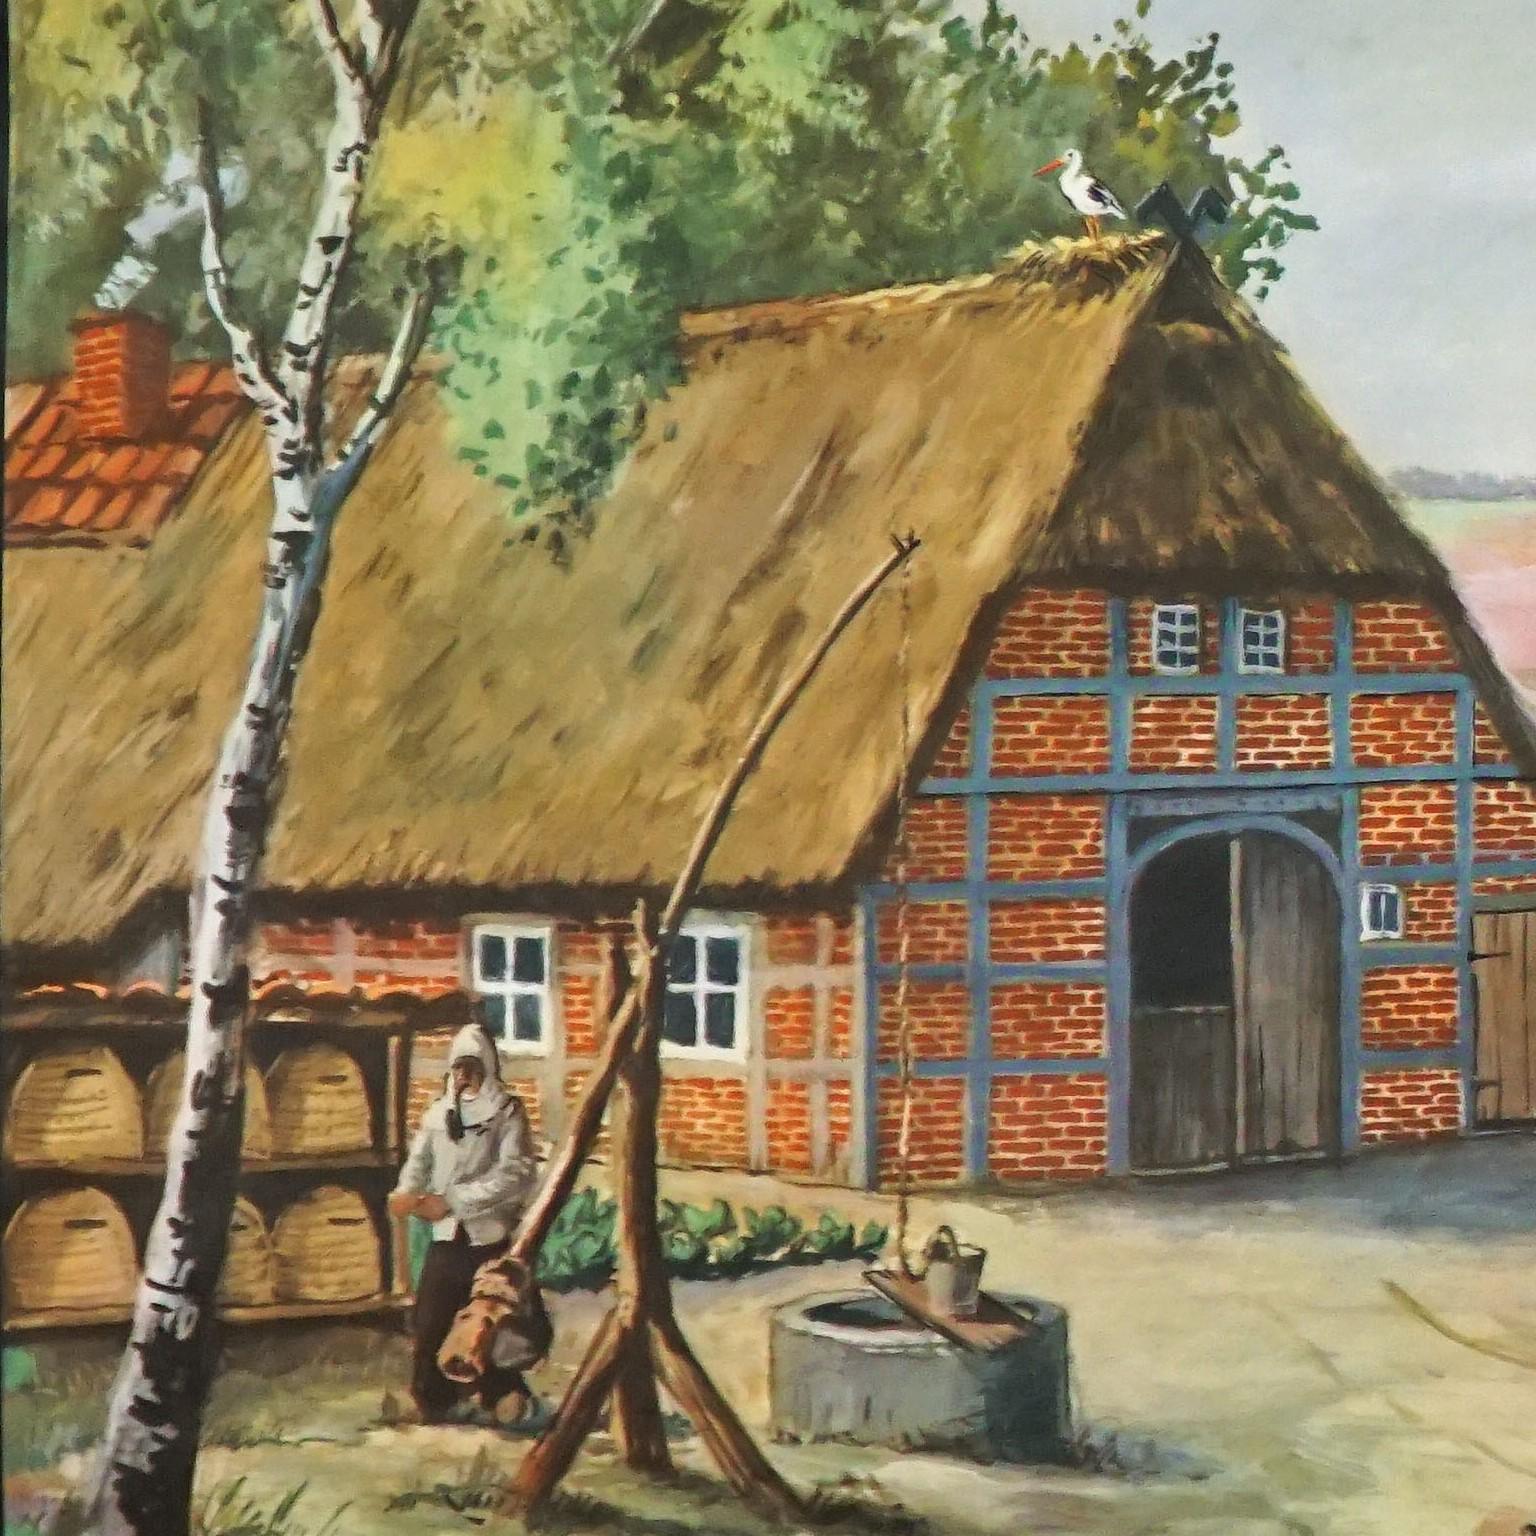 Le tableau mural déroulant vintage de cottagecore illustre le merveilleux paysage des landes de Lueneburg (une région unique dans le nord de l'Allemagne) avec une ferme typique, des ruches avec un apiculteur, un berger avec son troupeau de moutons